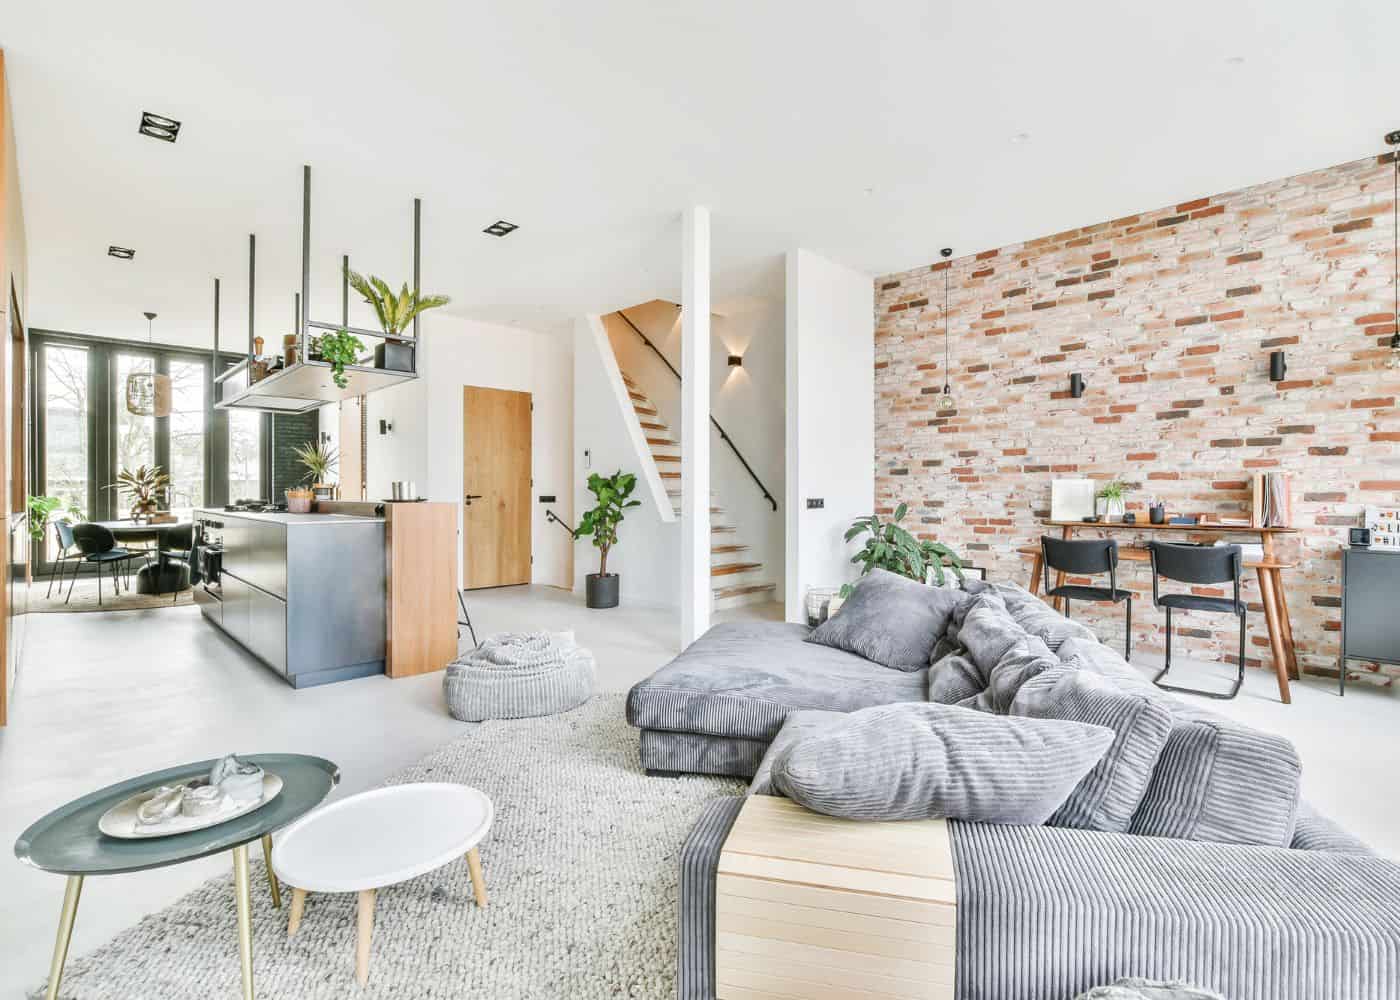 comfy home decor for families